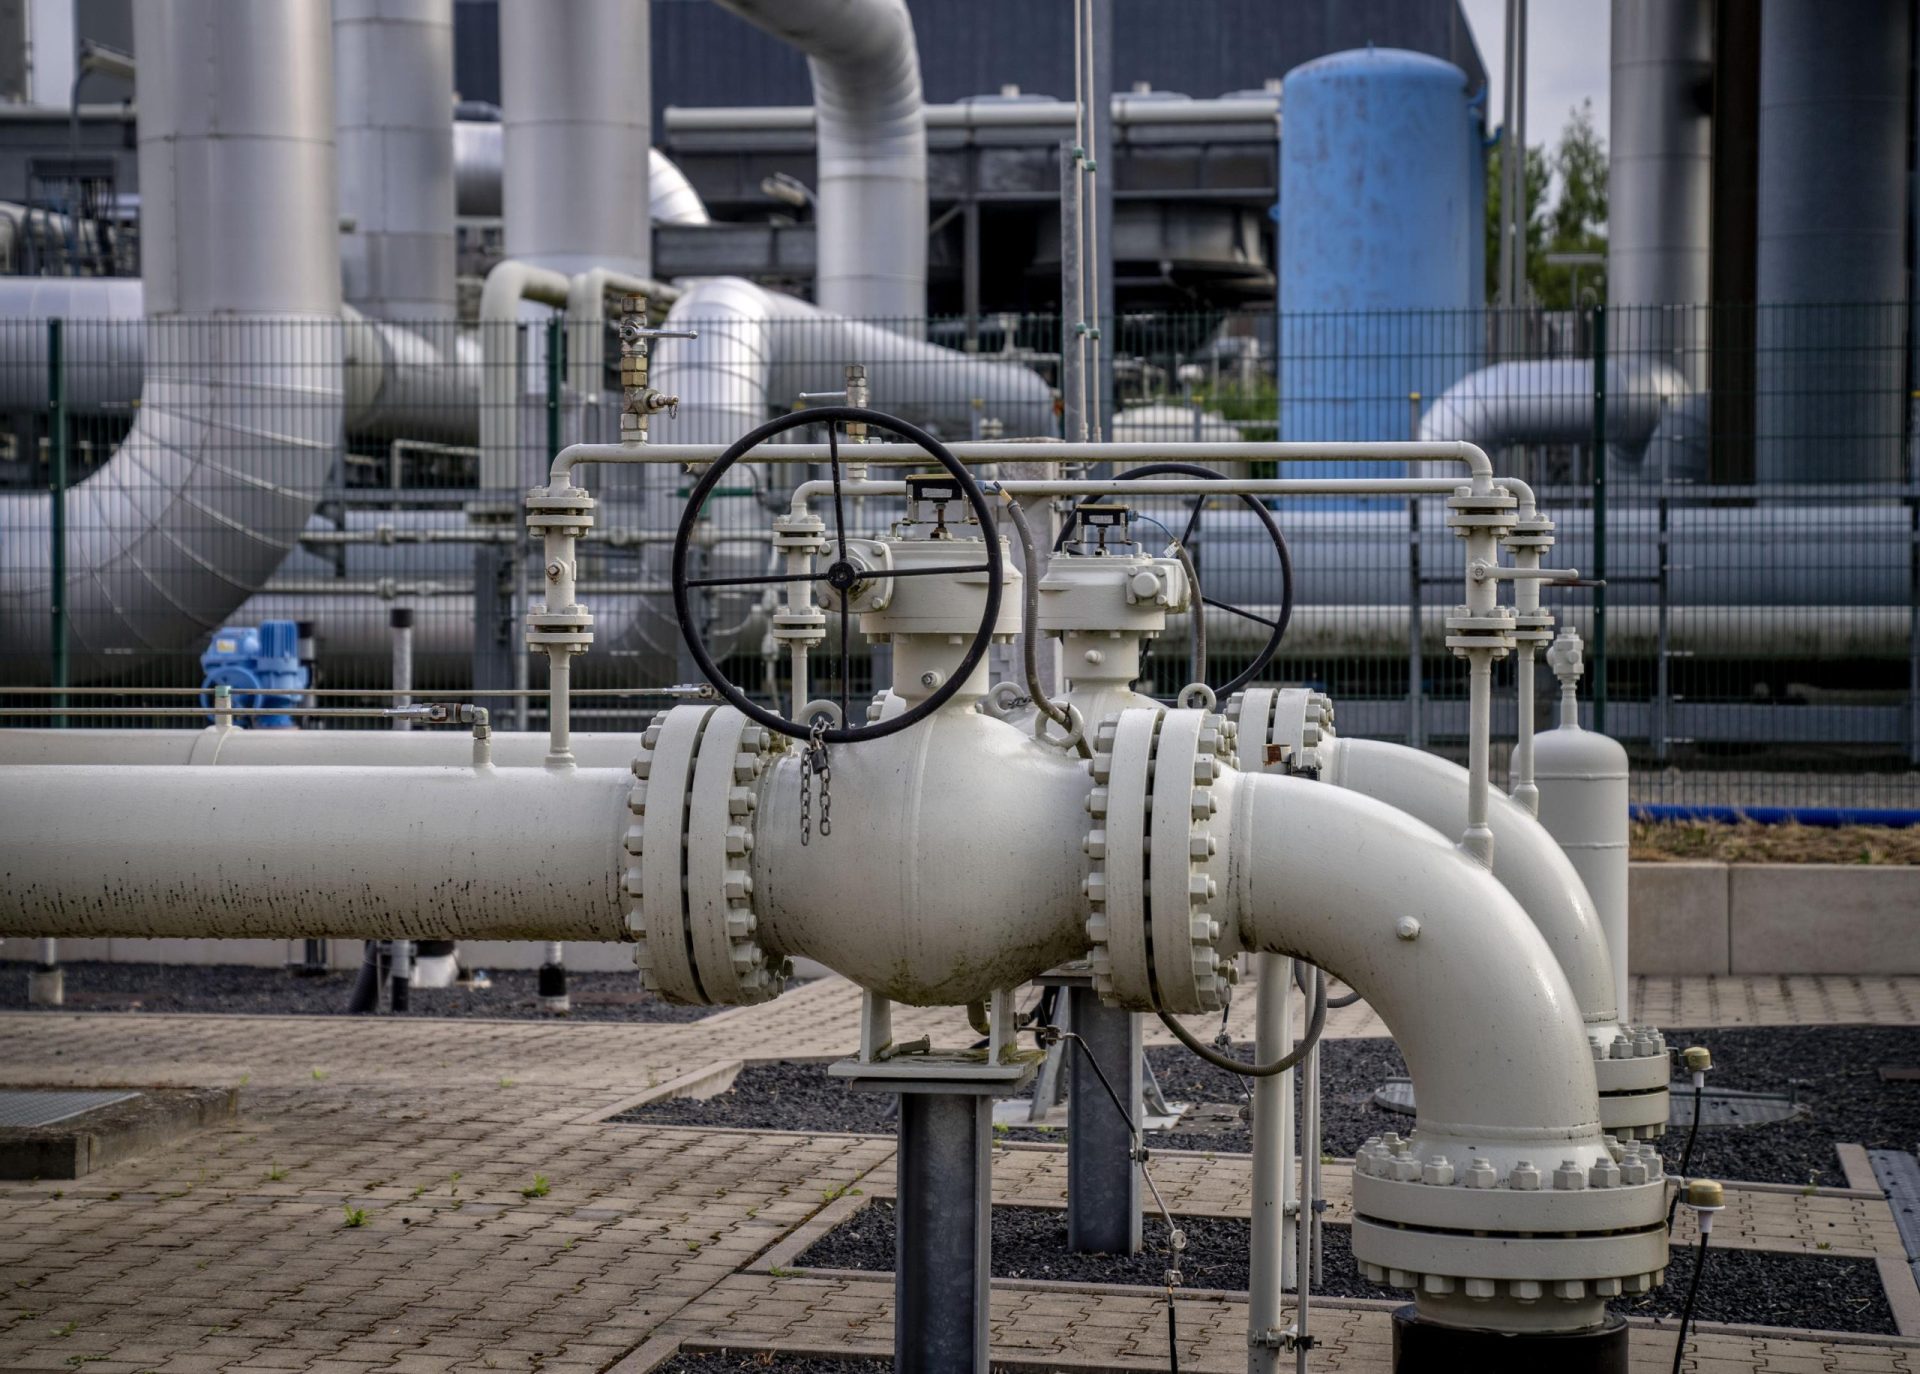 EXPLICATOR: ¿Puede vivir Europa sin el gas natural ruso?